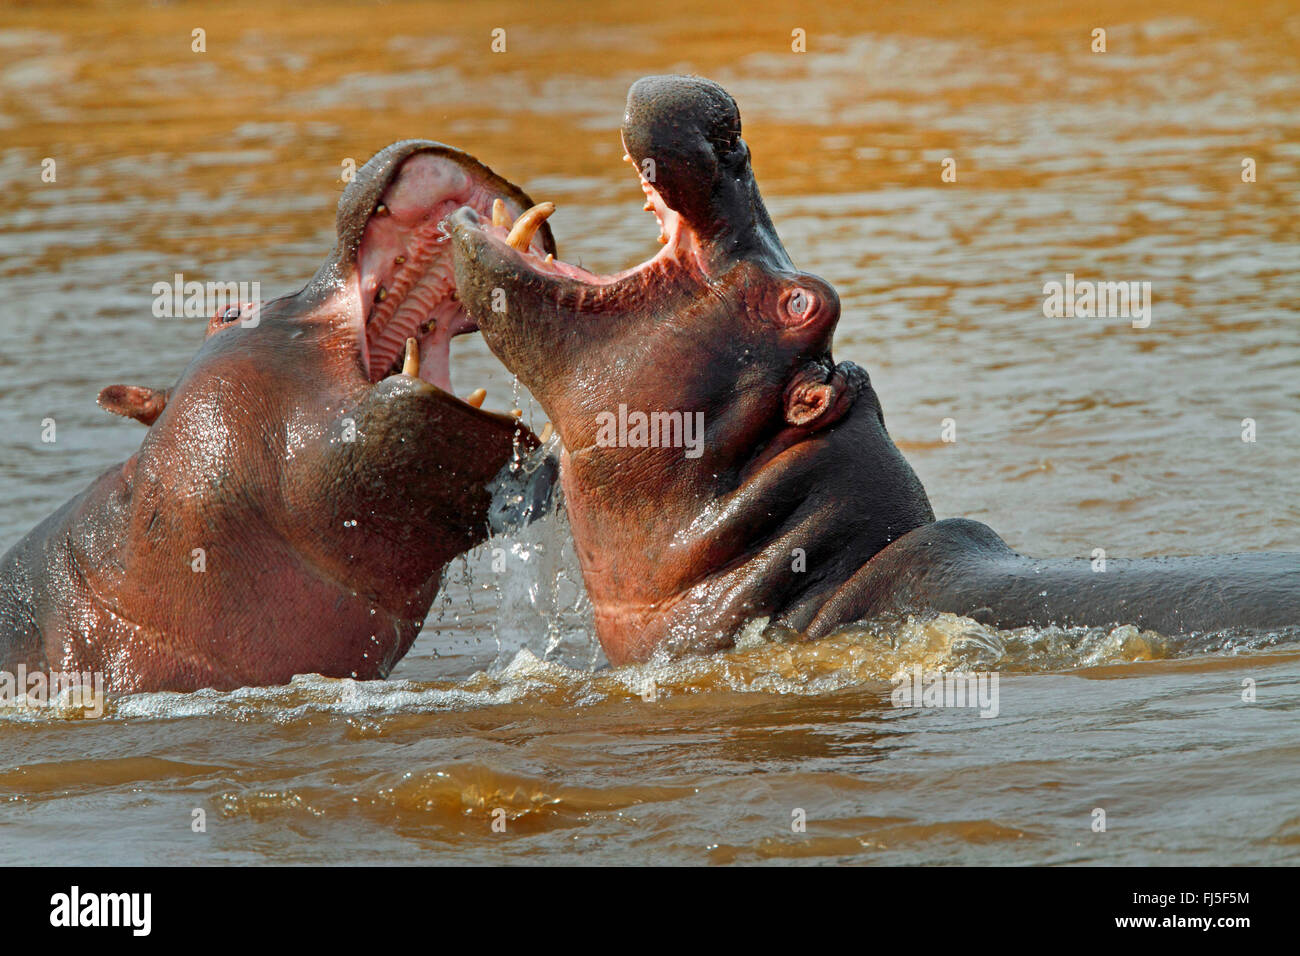 Nilpferd, Nilpferd, gemeinsame Flusspferd (Hippopotamus Amphibius), zwei kämpfende Flusspferde im Wasser, Kenia, Masai Mara Nationalpark Stockfoto